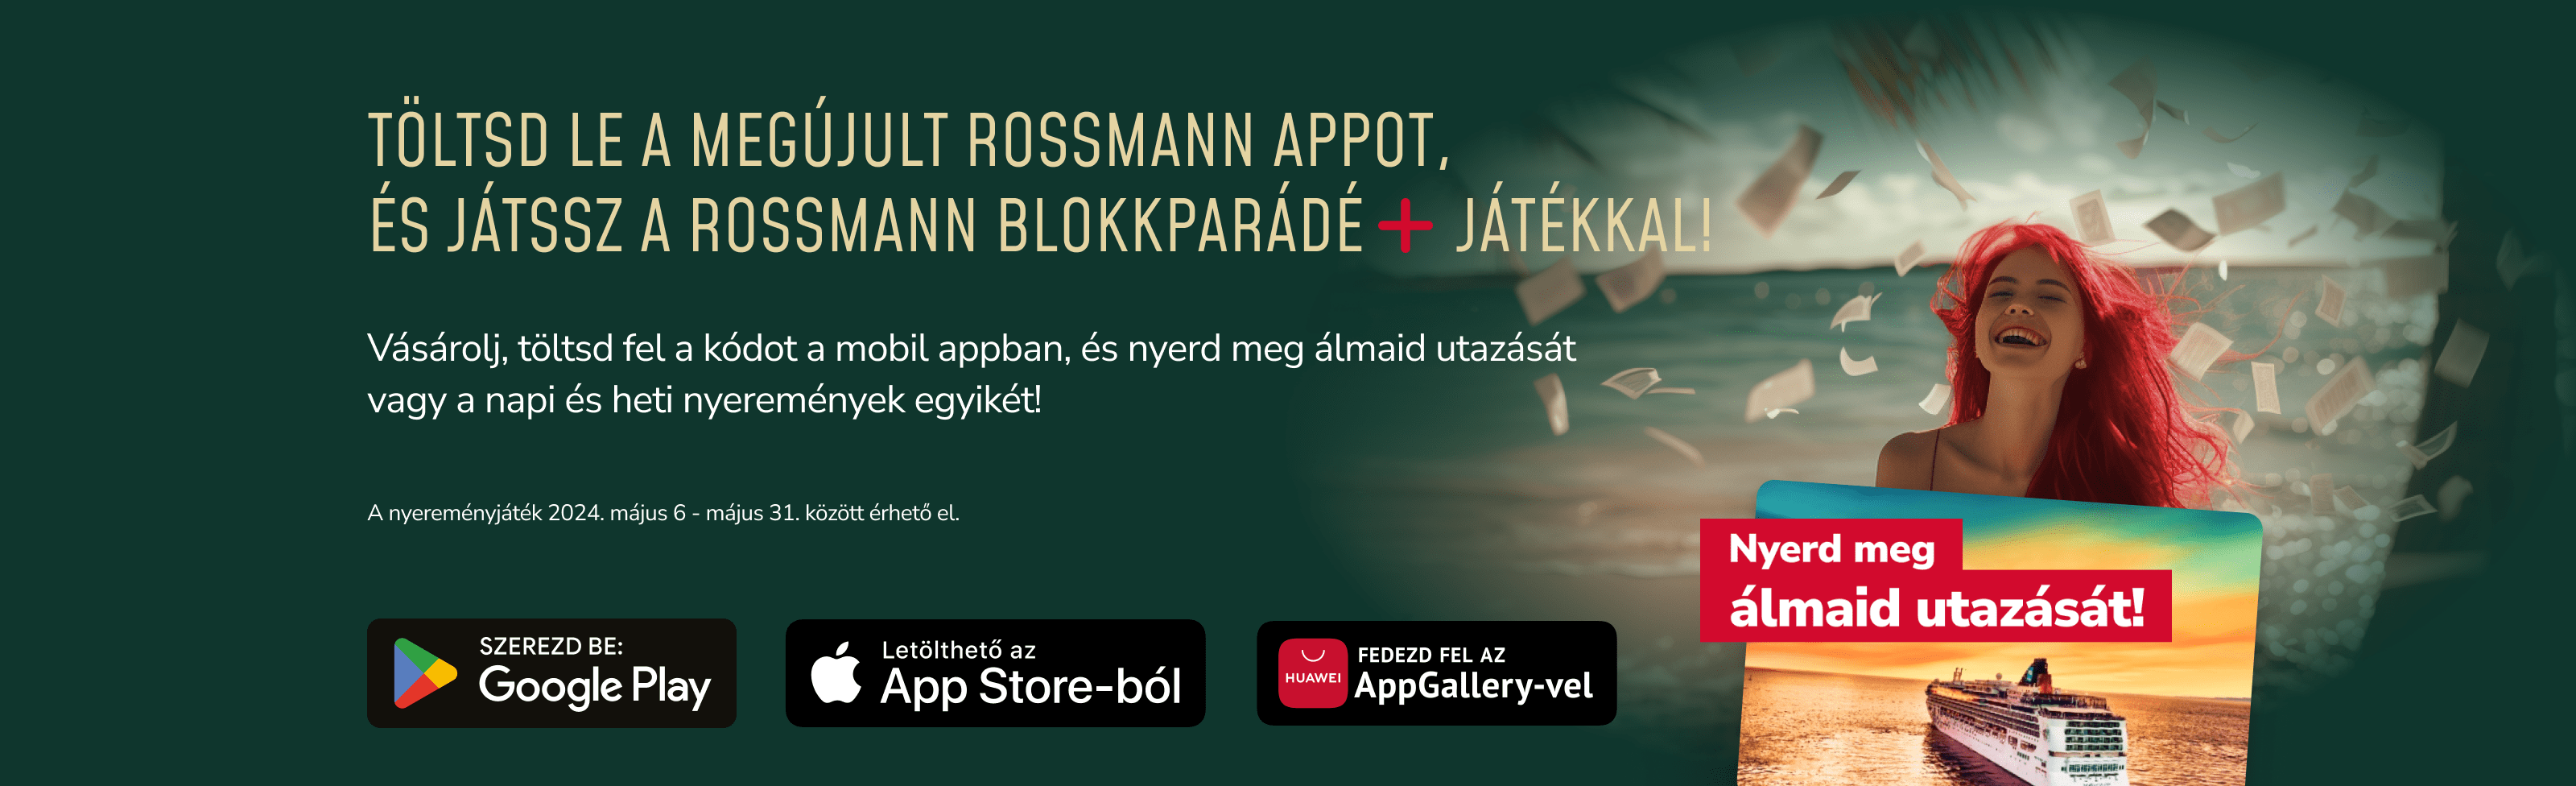 Töltsd le a megújult rossmann appot és játssz a rossmann blokkparádé+ játékkal!